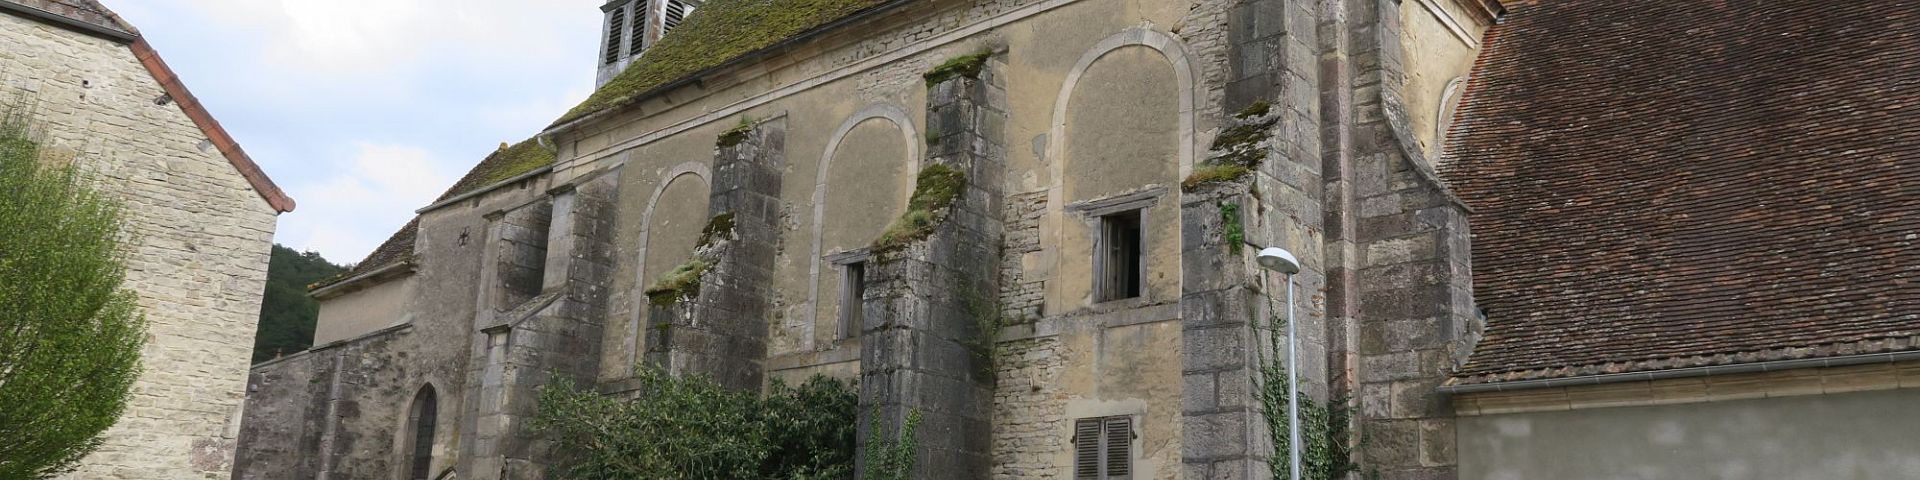 Pralon - Eglise de l'Assomption (ancienne abbaye) (21)